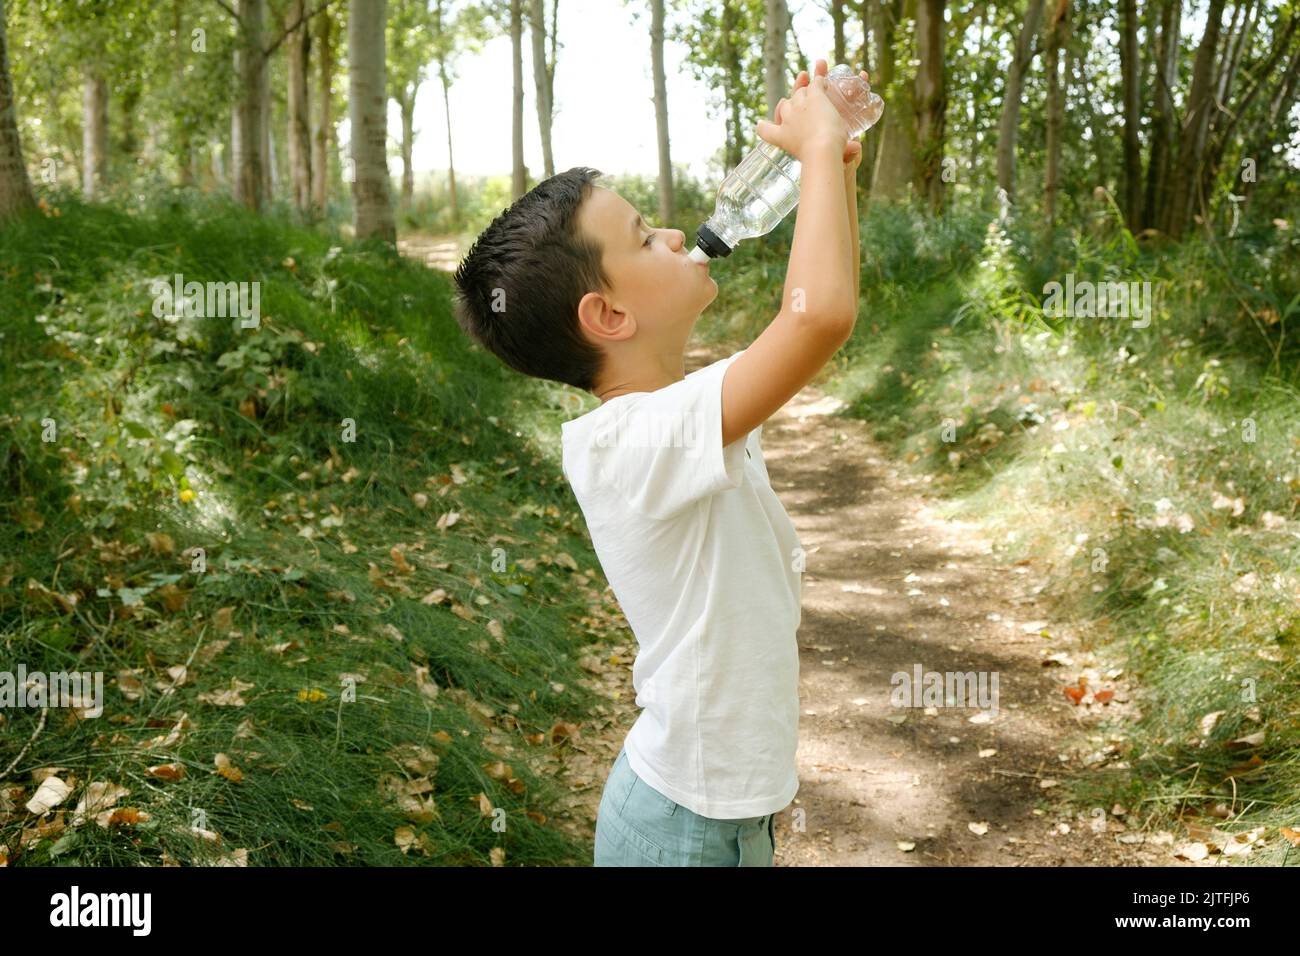 un enfant boit de l'eau en bouteille lors d'une randonnée dans la nature. Hydratation en été chaud Banque D'Images